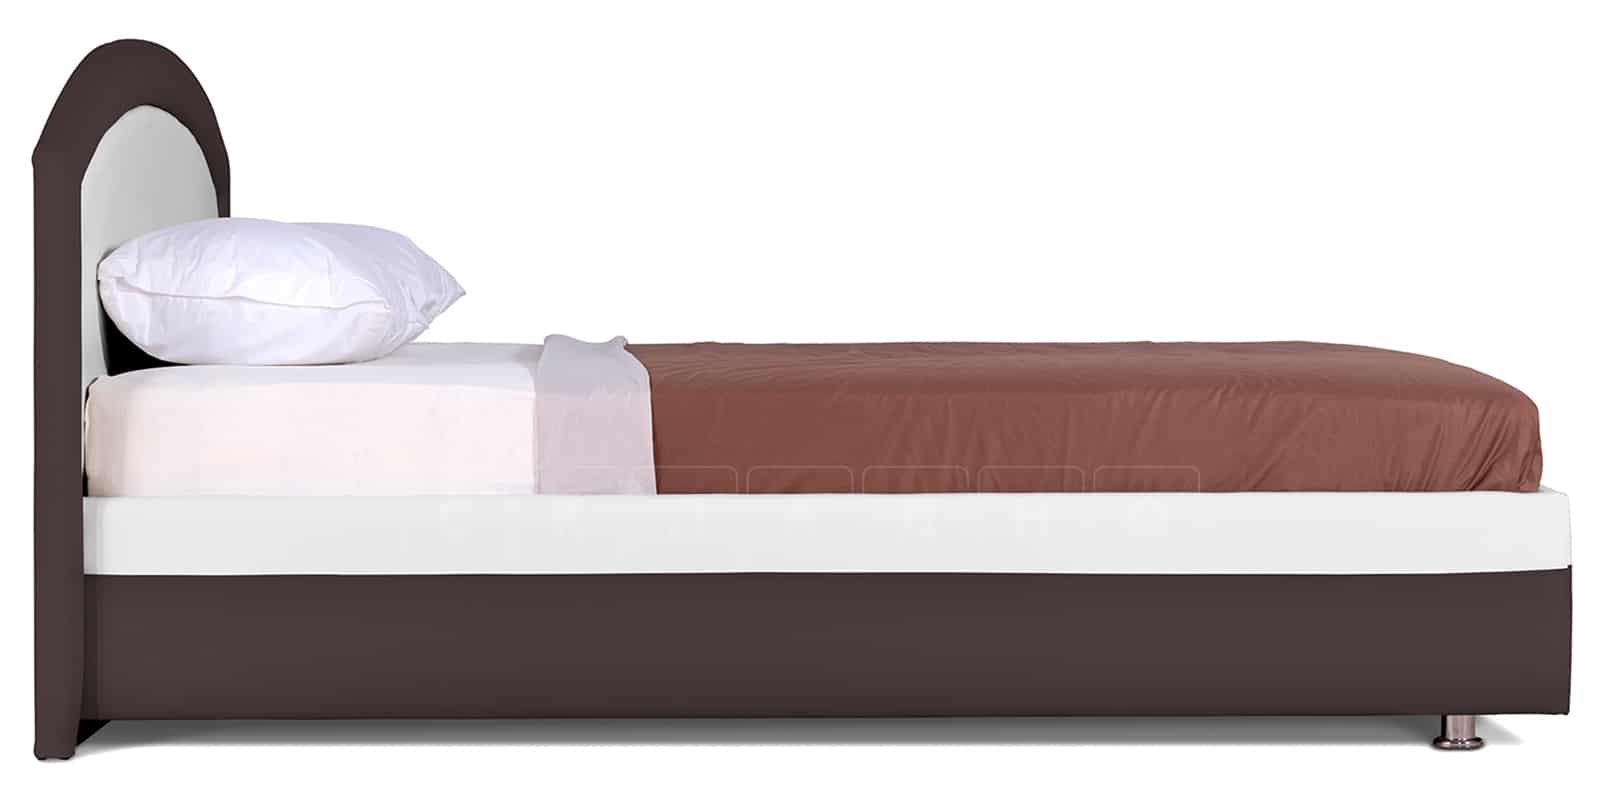 Мягкая кровать Малибу 160 см экокожа белый-шоколад вариант 8-2 фото 4 | интернет-магазин Складно